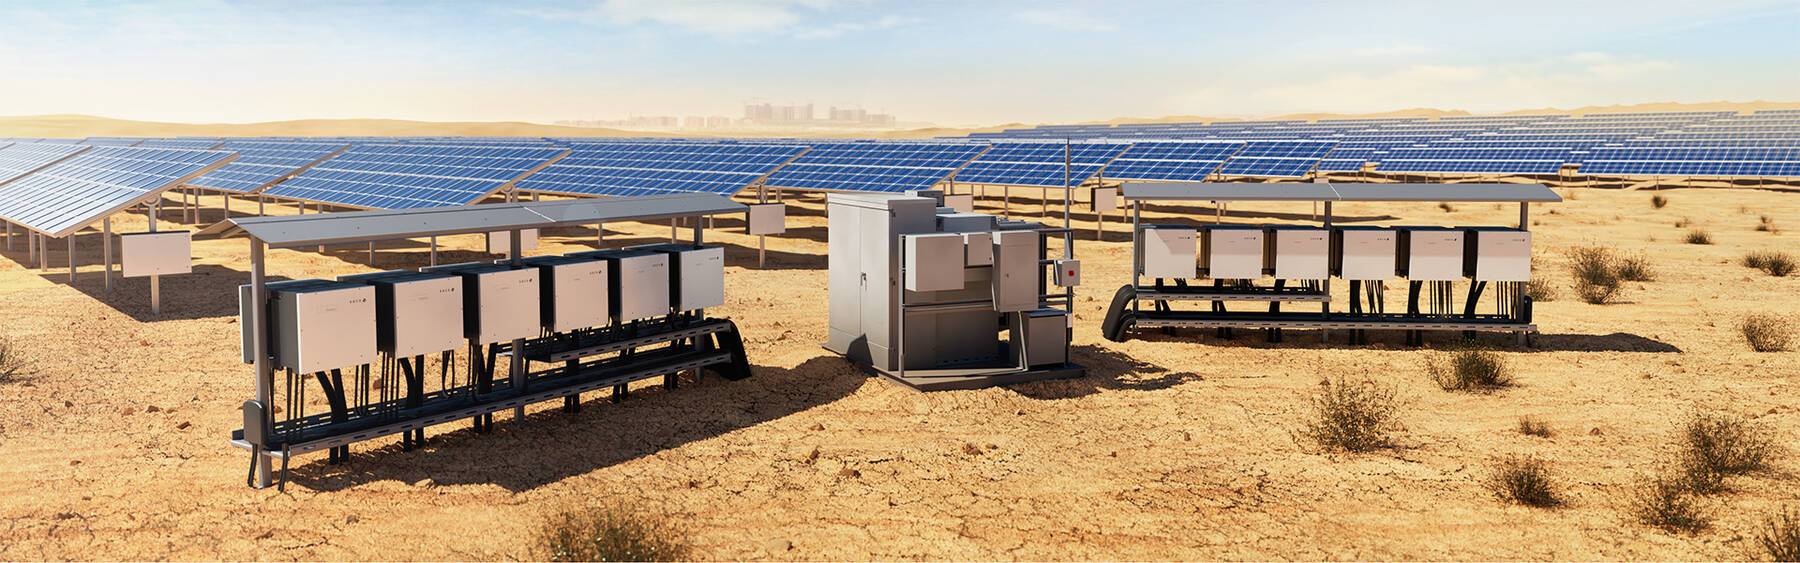 blueplanet web pro - Supervisión profesional de instalaciones solares fotovoltaicas